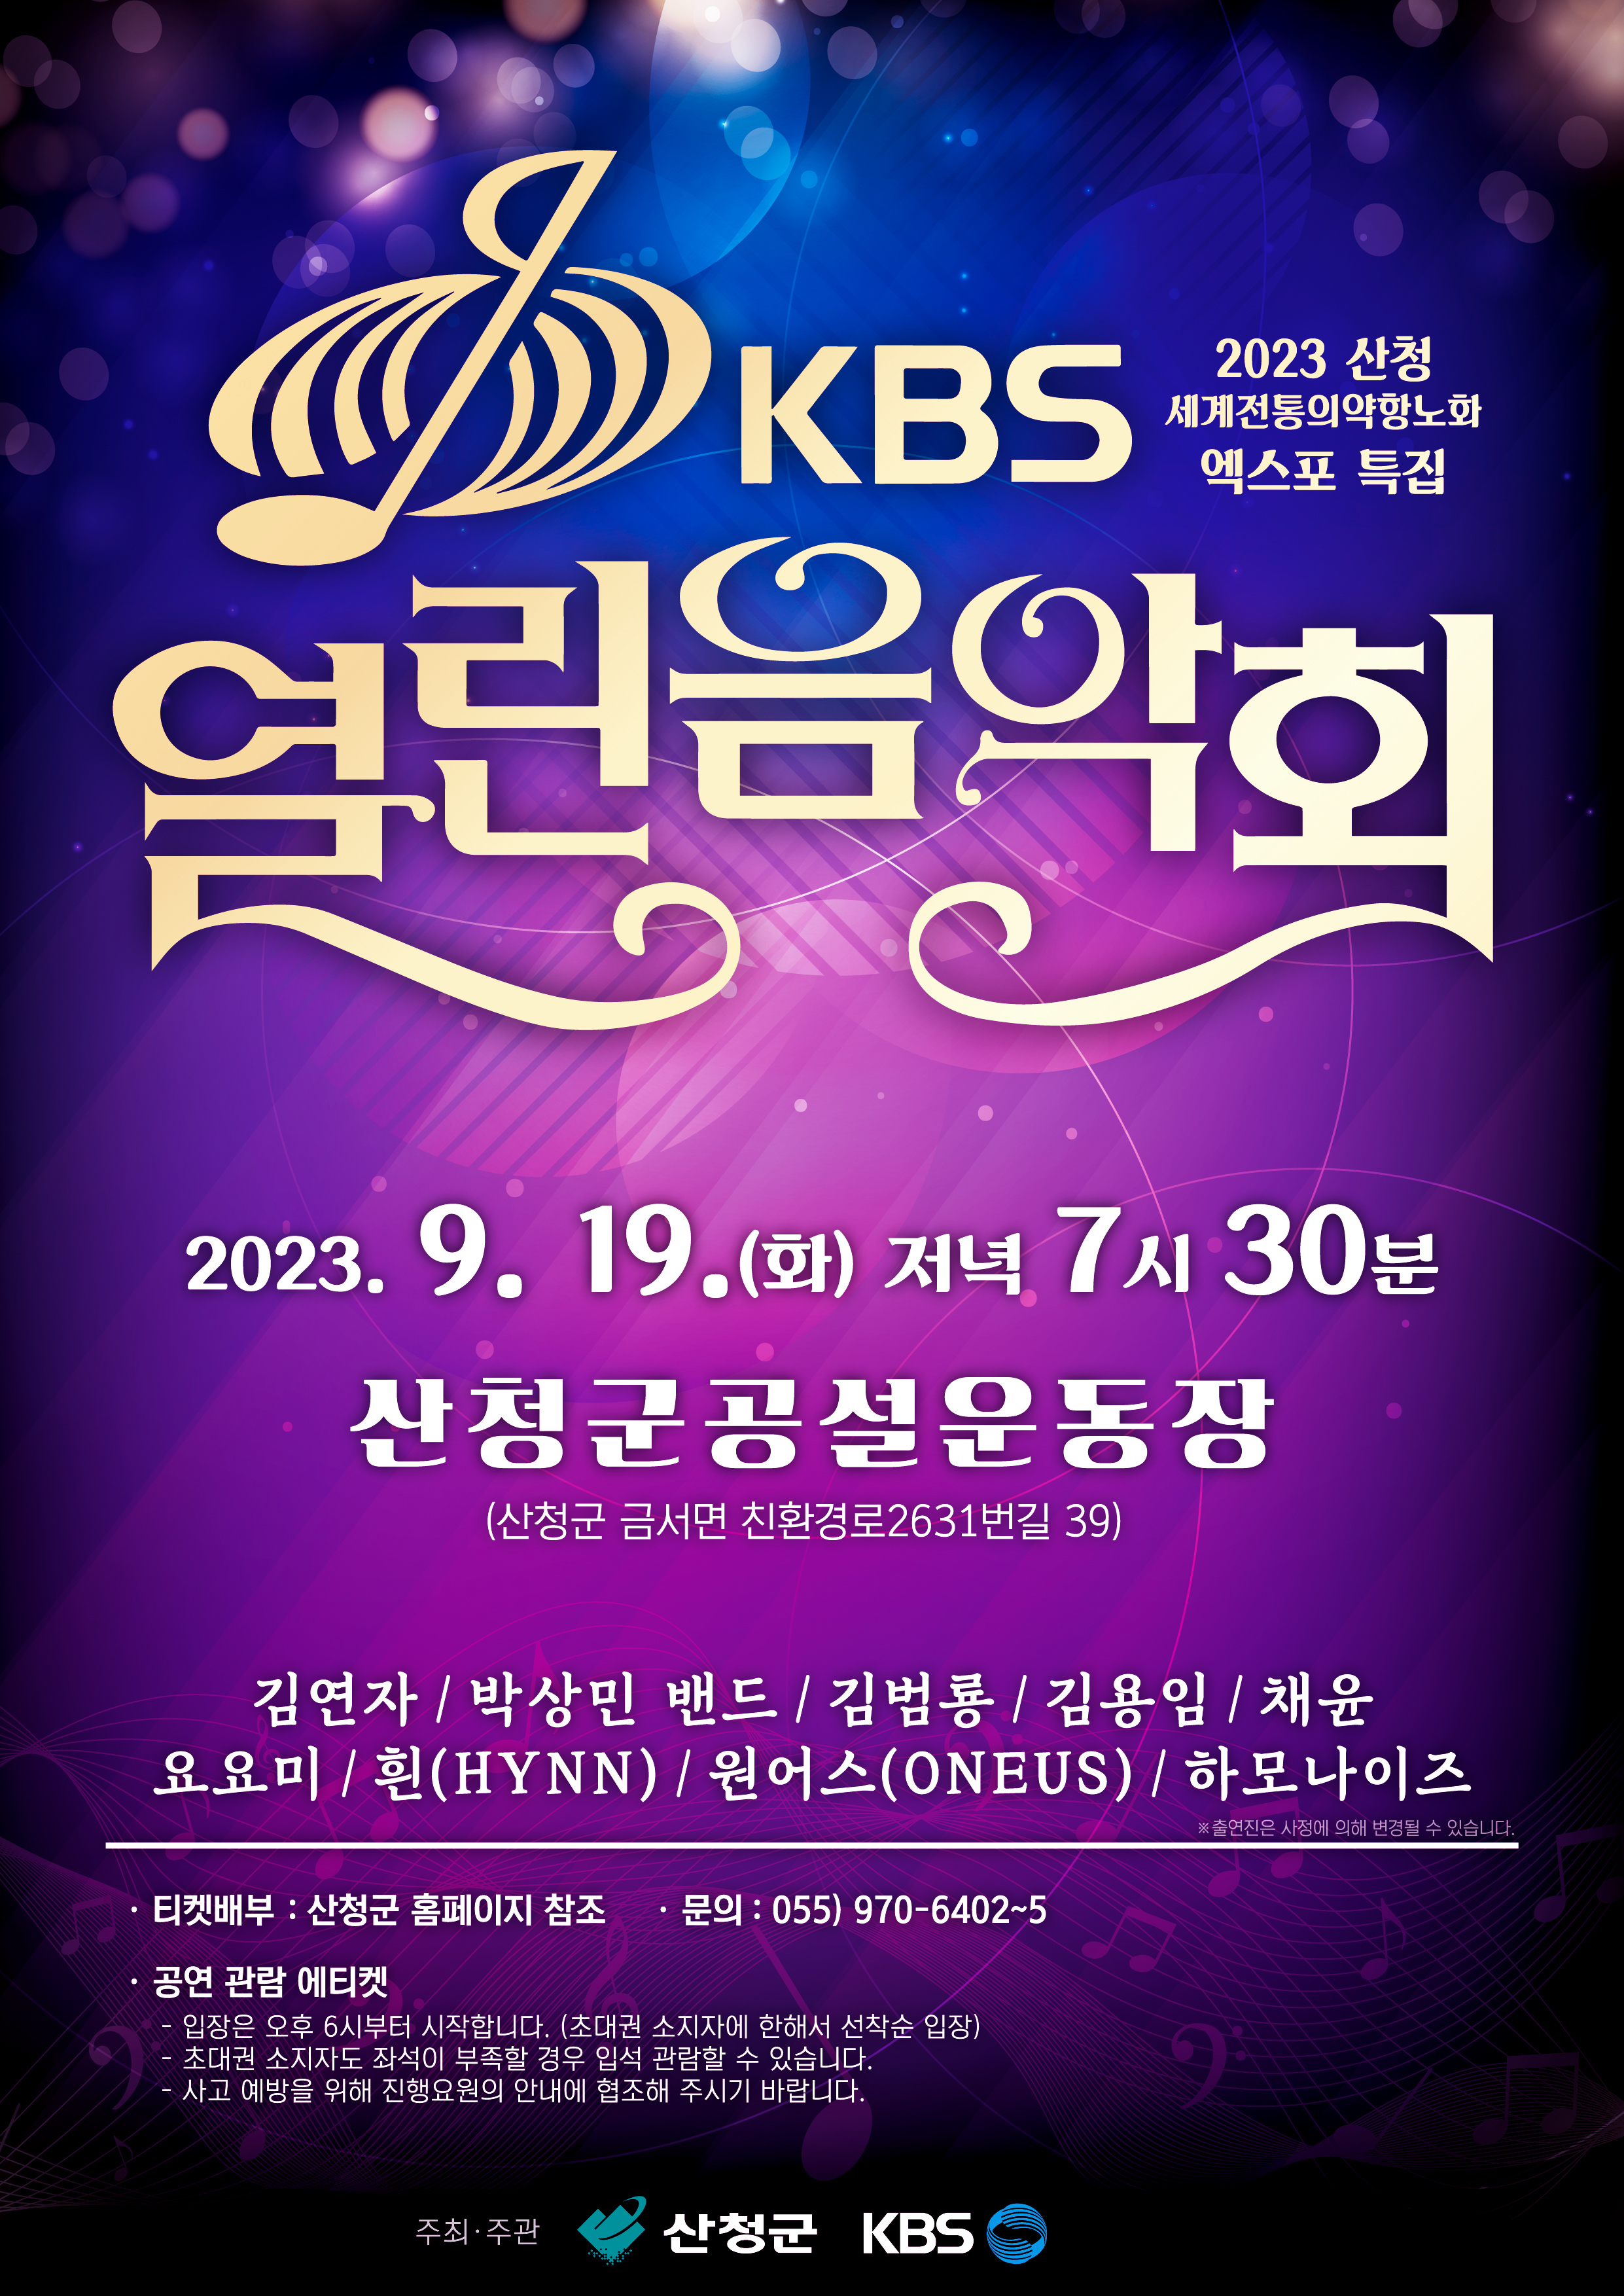 「KBS 열린음악회」 개최 안내 1